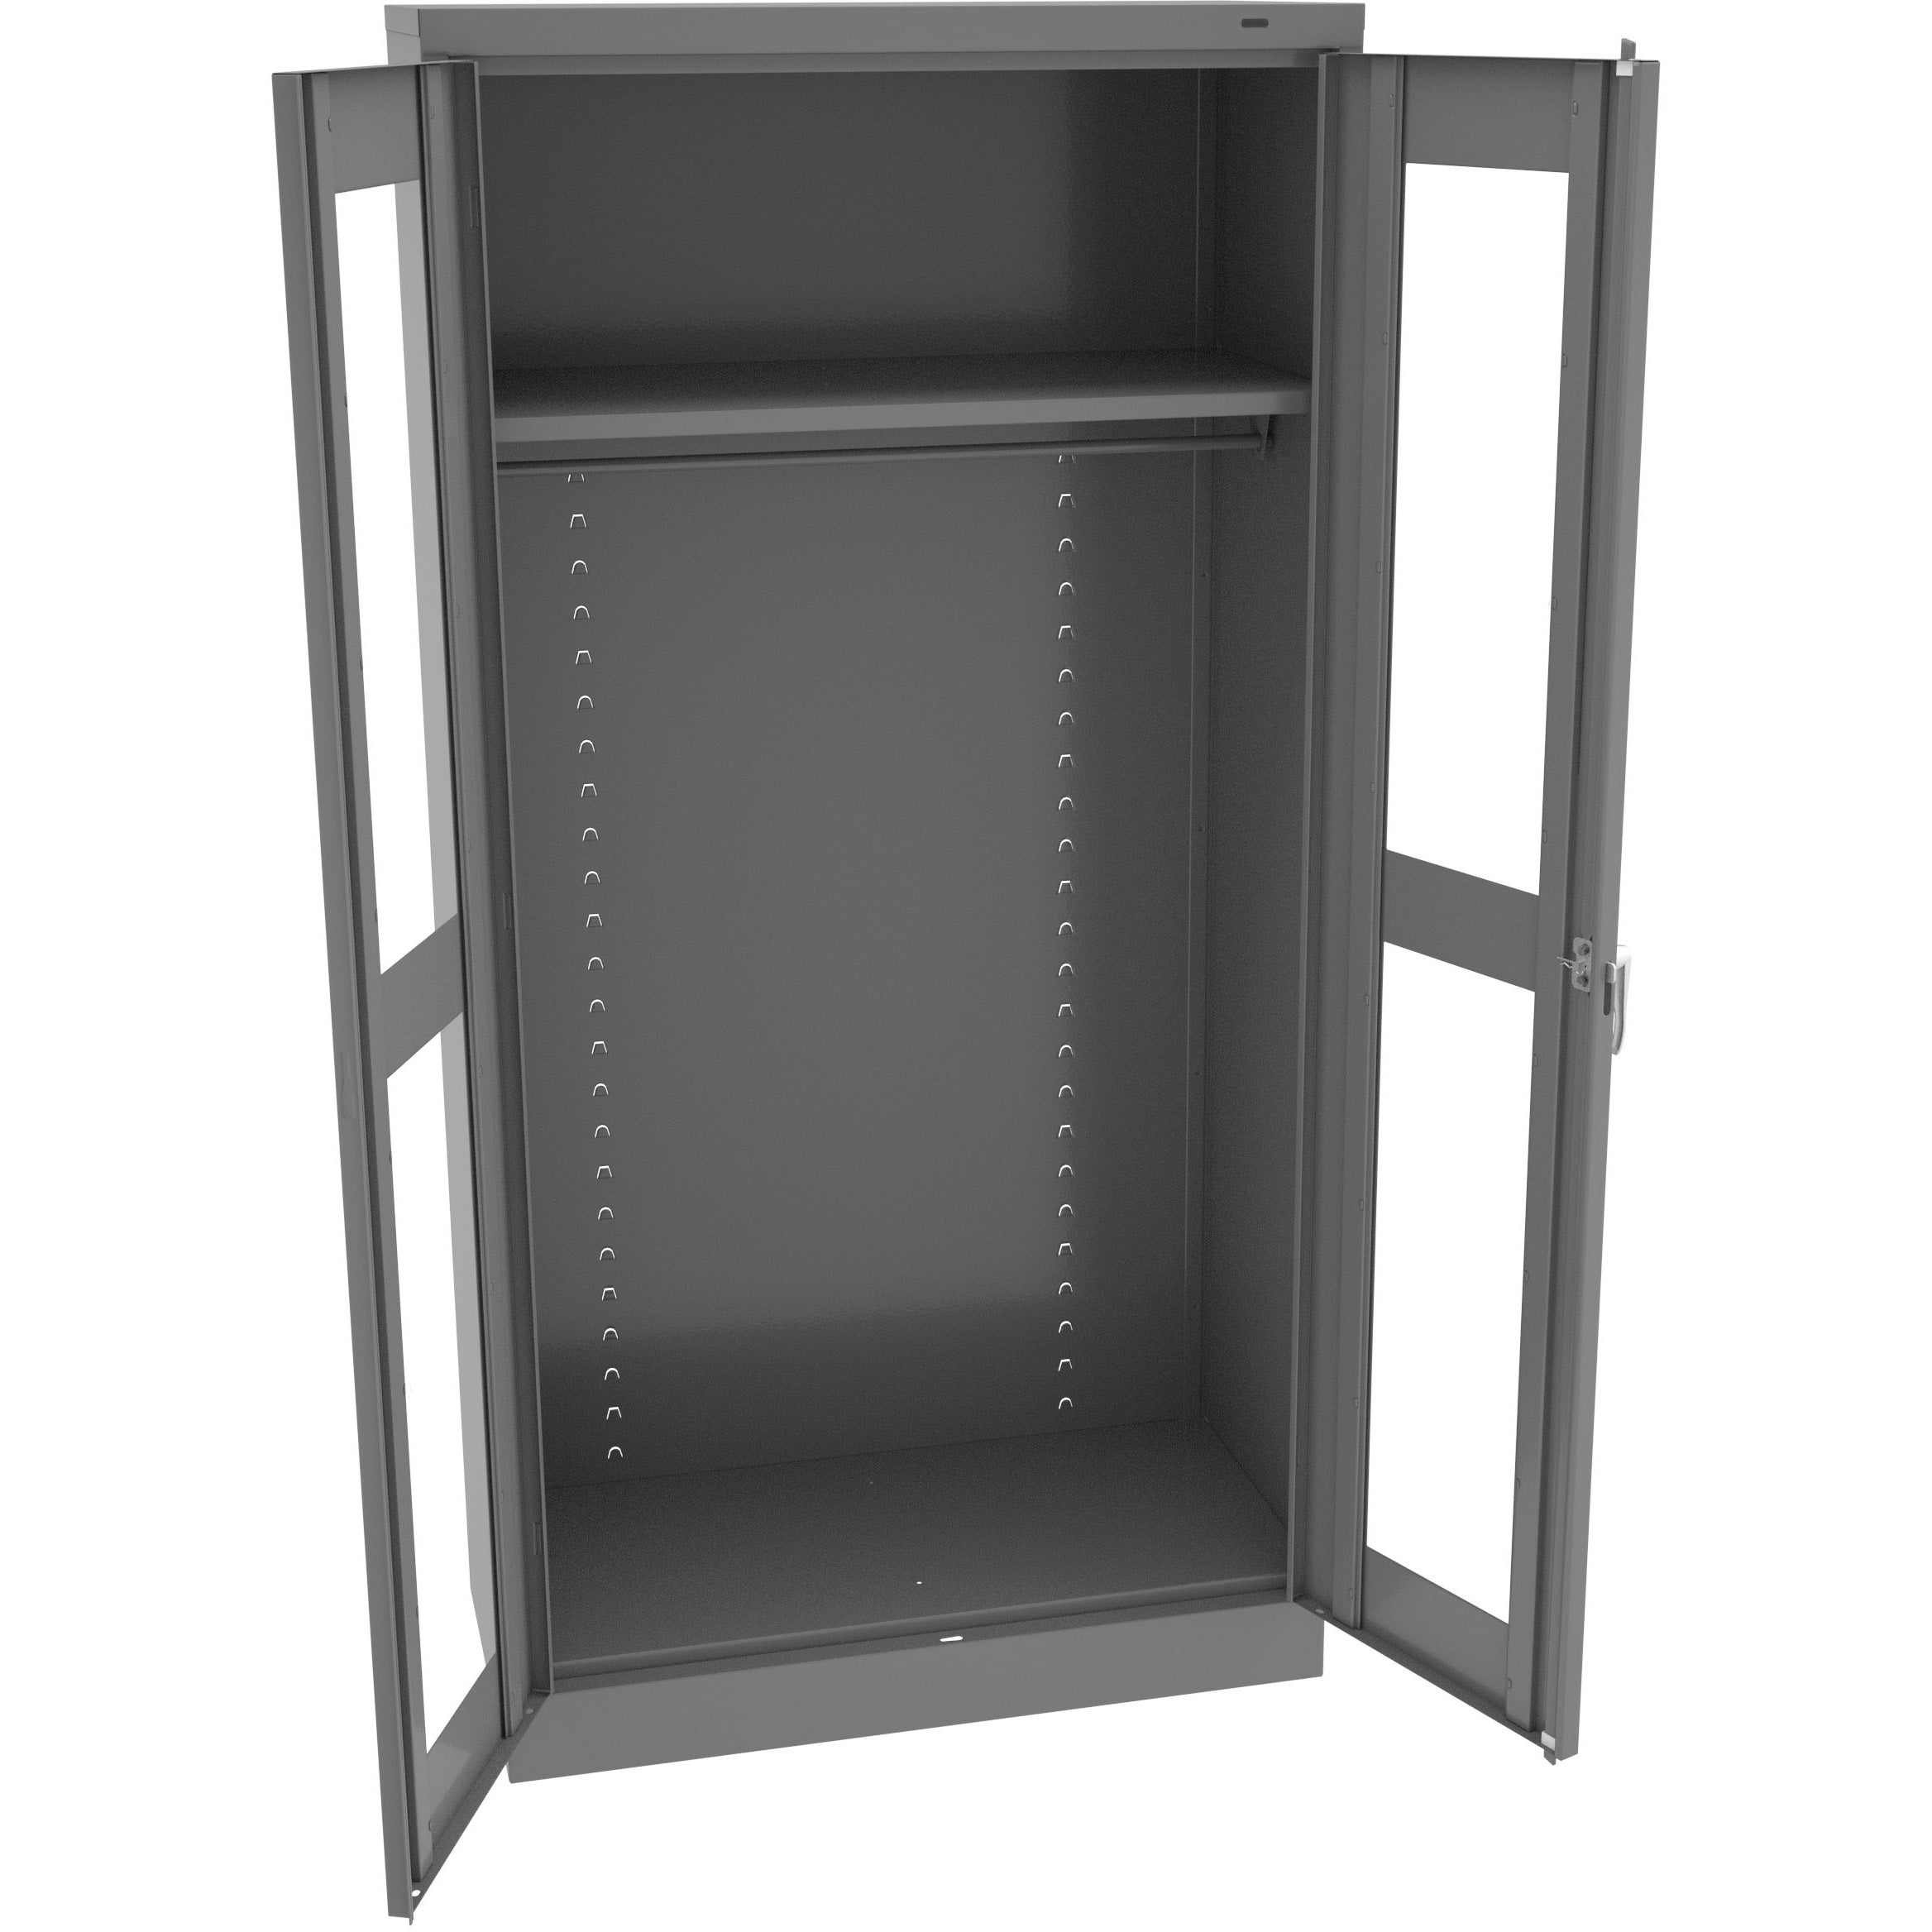 Tennsco 72" High Standard Wardrobe Cabinet with C-Thru Doors - Assembled, CVD7114